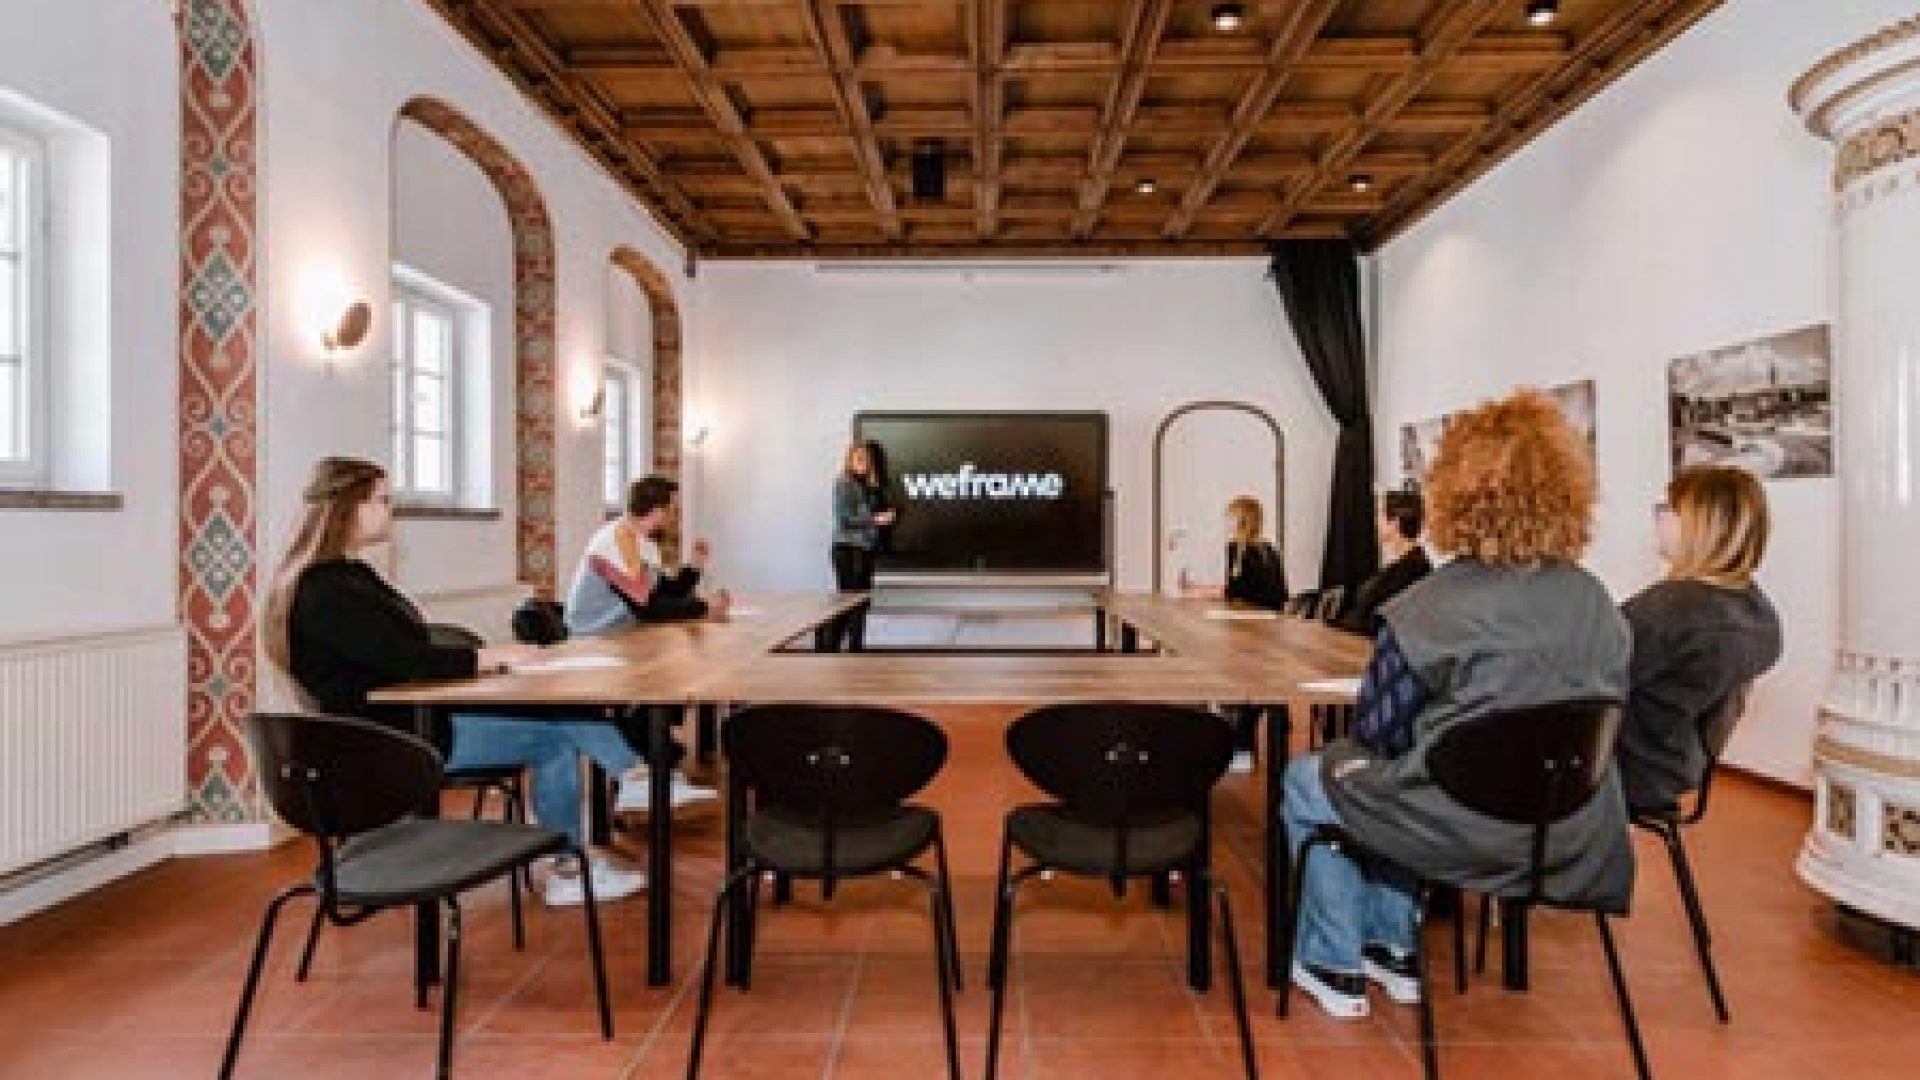 Foto des weframe Bildschirms, genutzt in Konferenz im Salon in Kempten. Der Salon ist ein Veranstaltungsort der Eventagentur KAD mit Fullservice-Character.